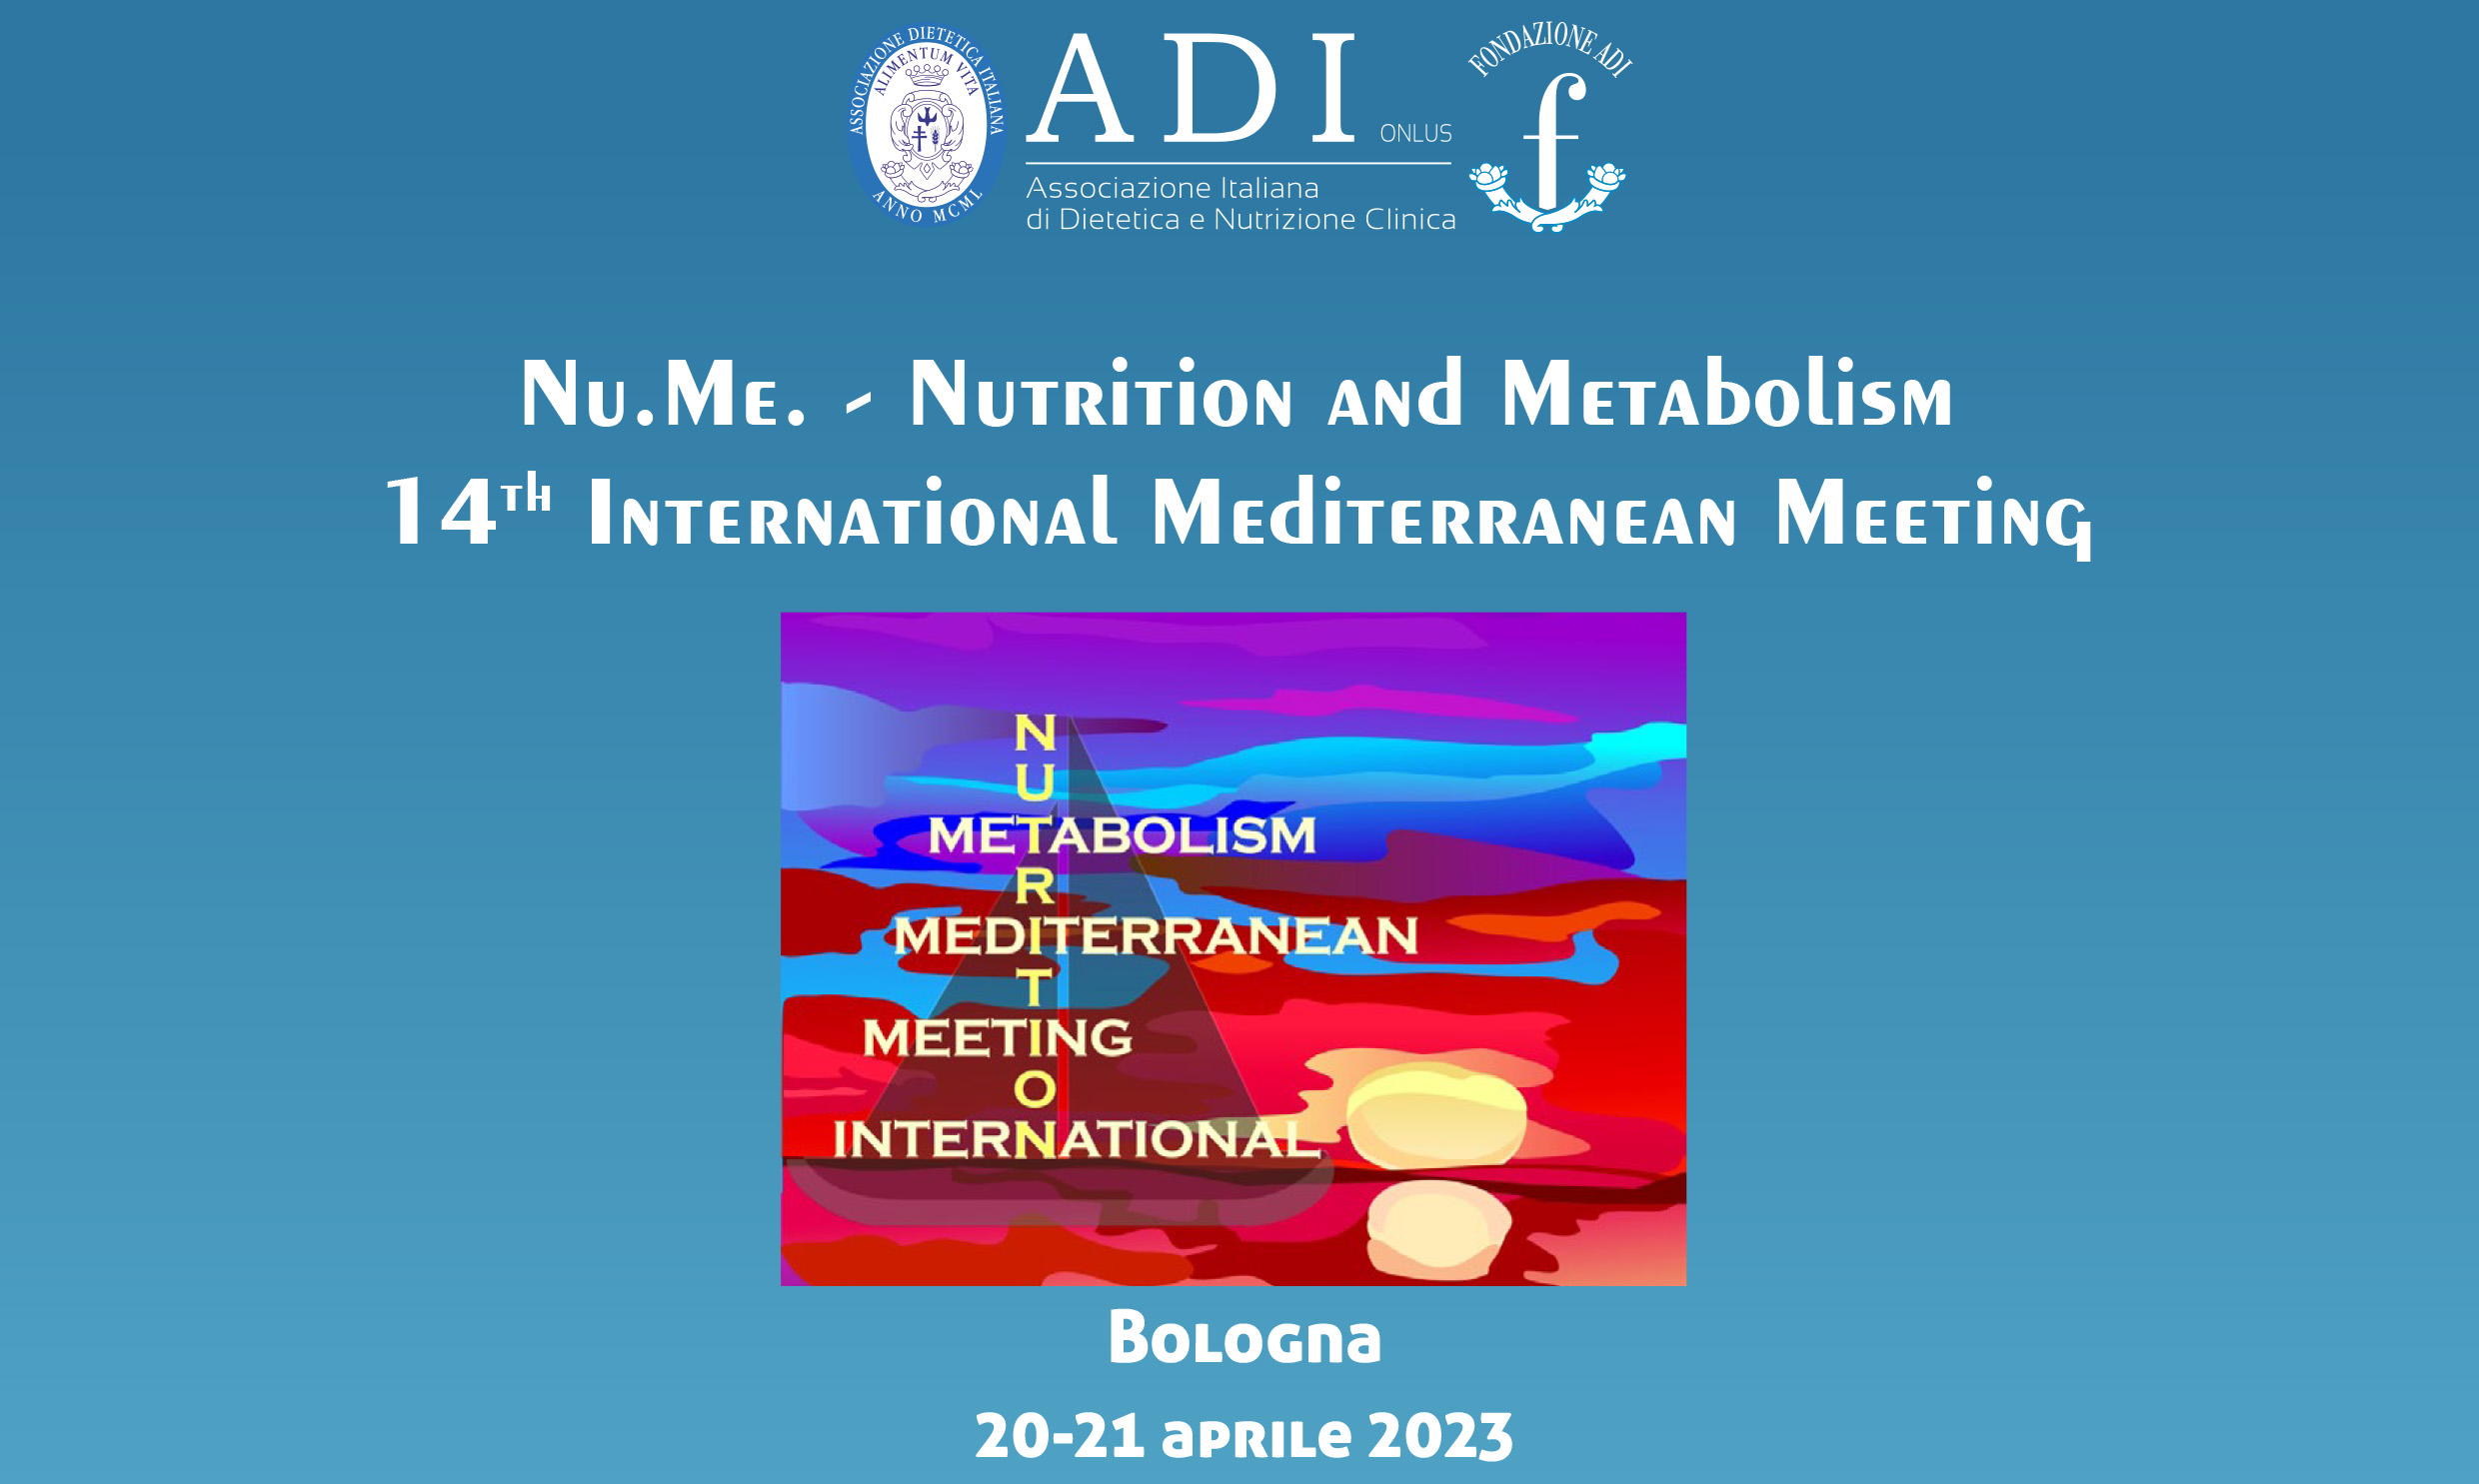 14th International Mediterranean Meeting - Nu.Me.